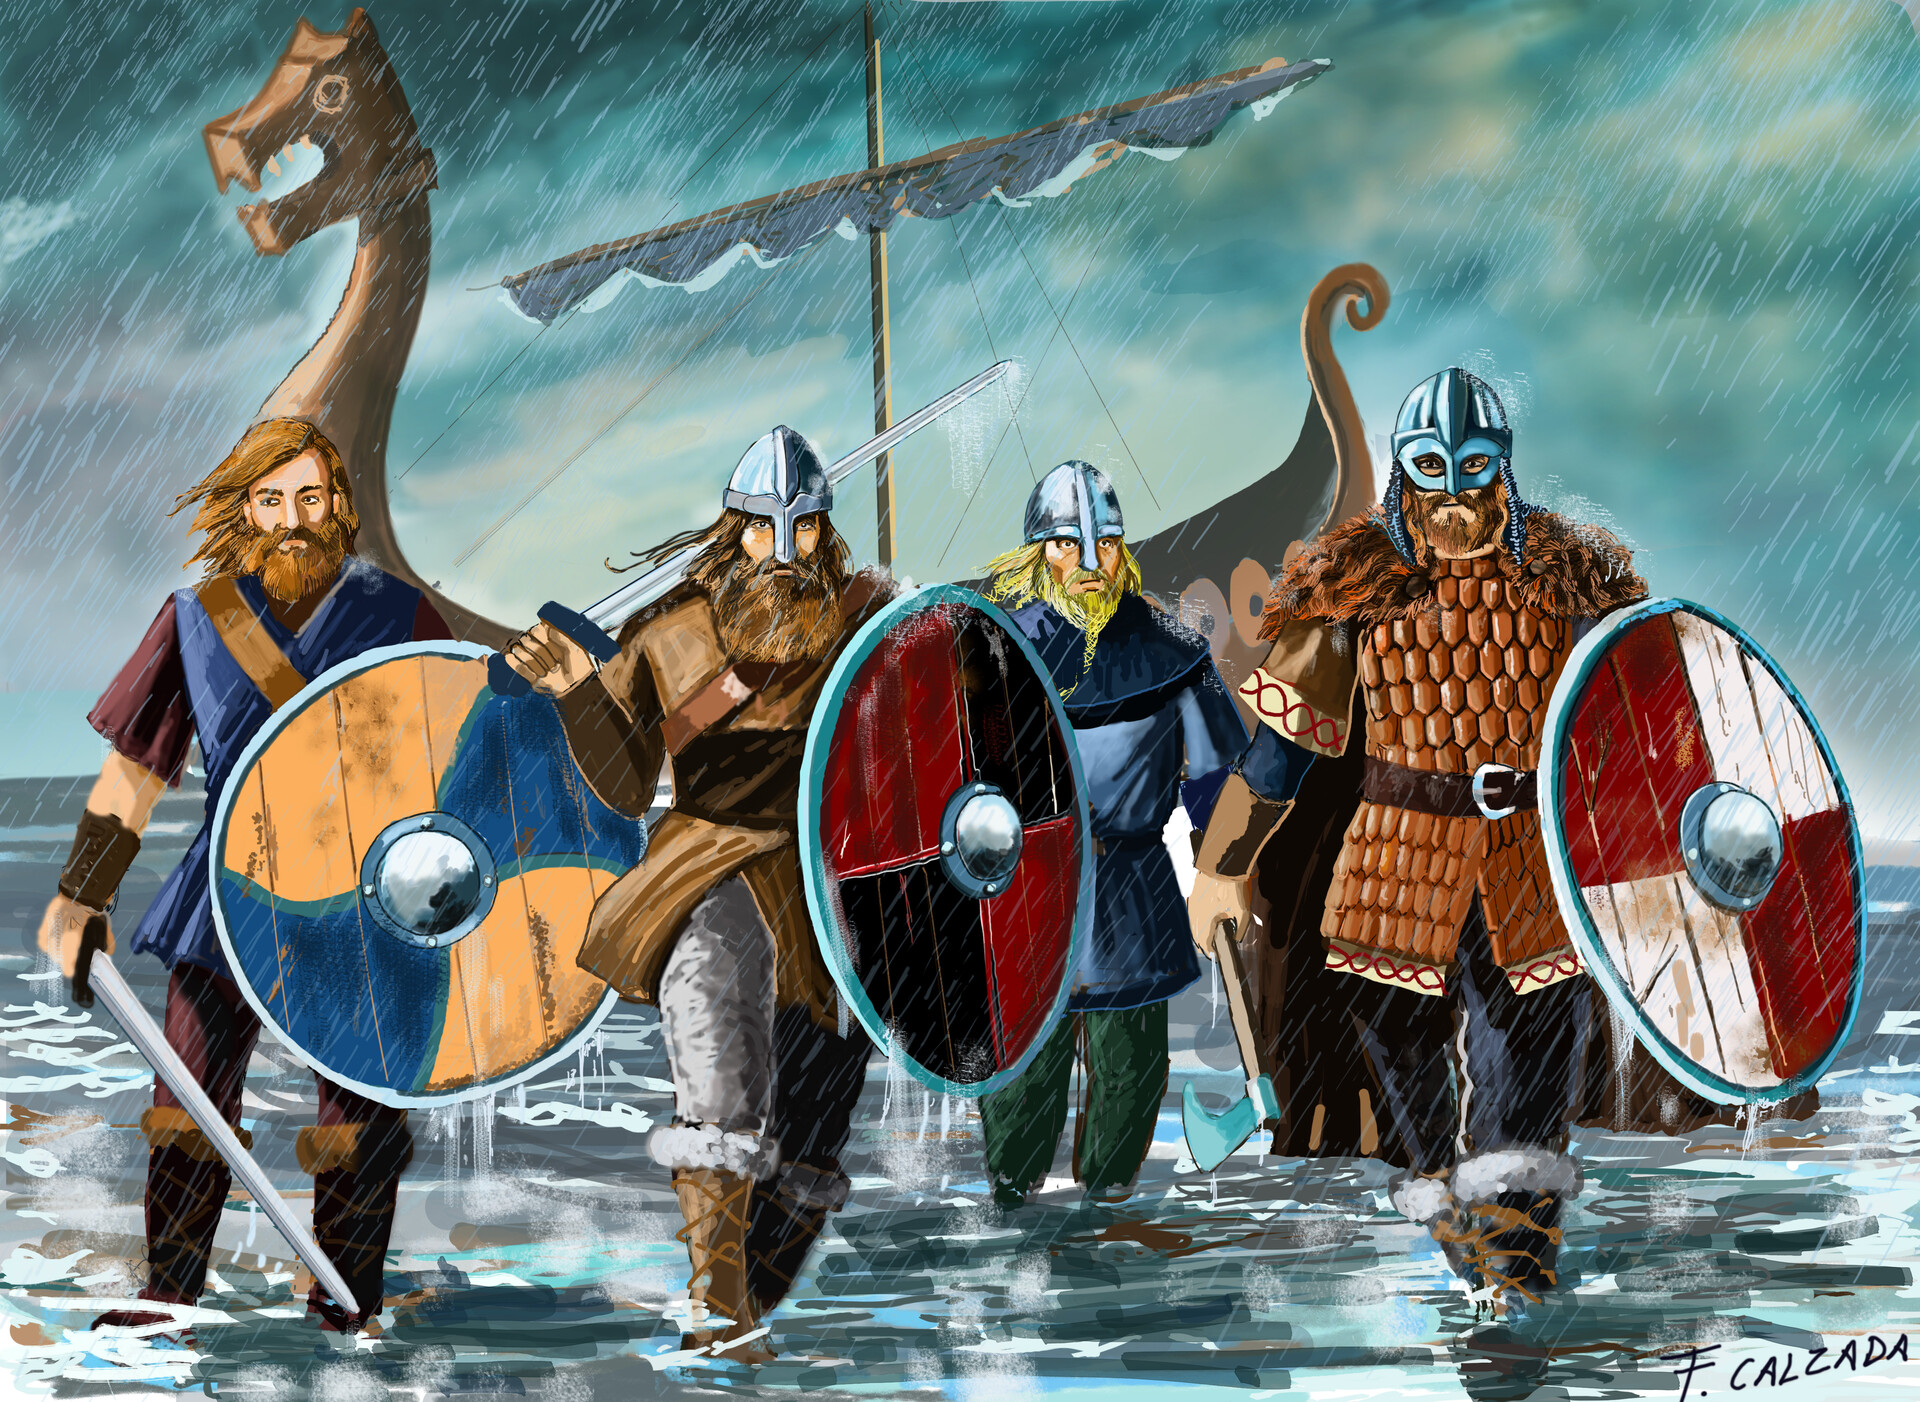 Русские против викингов. Скандинавы Варяги Викинги. Норманны Викинги скандинавы. Бритты, Норманны, Варяги (Викинги). Норманны Варяги Русь.